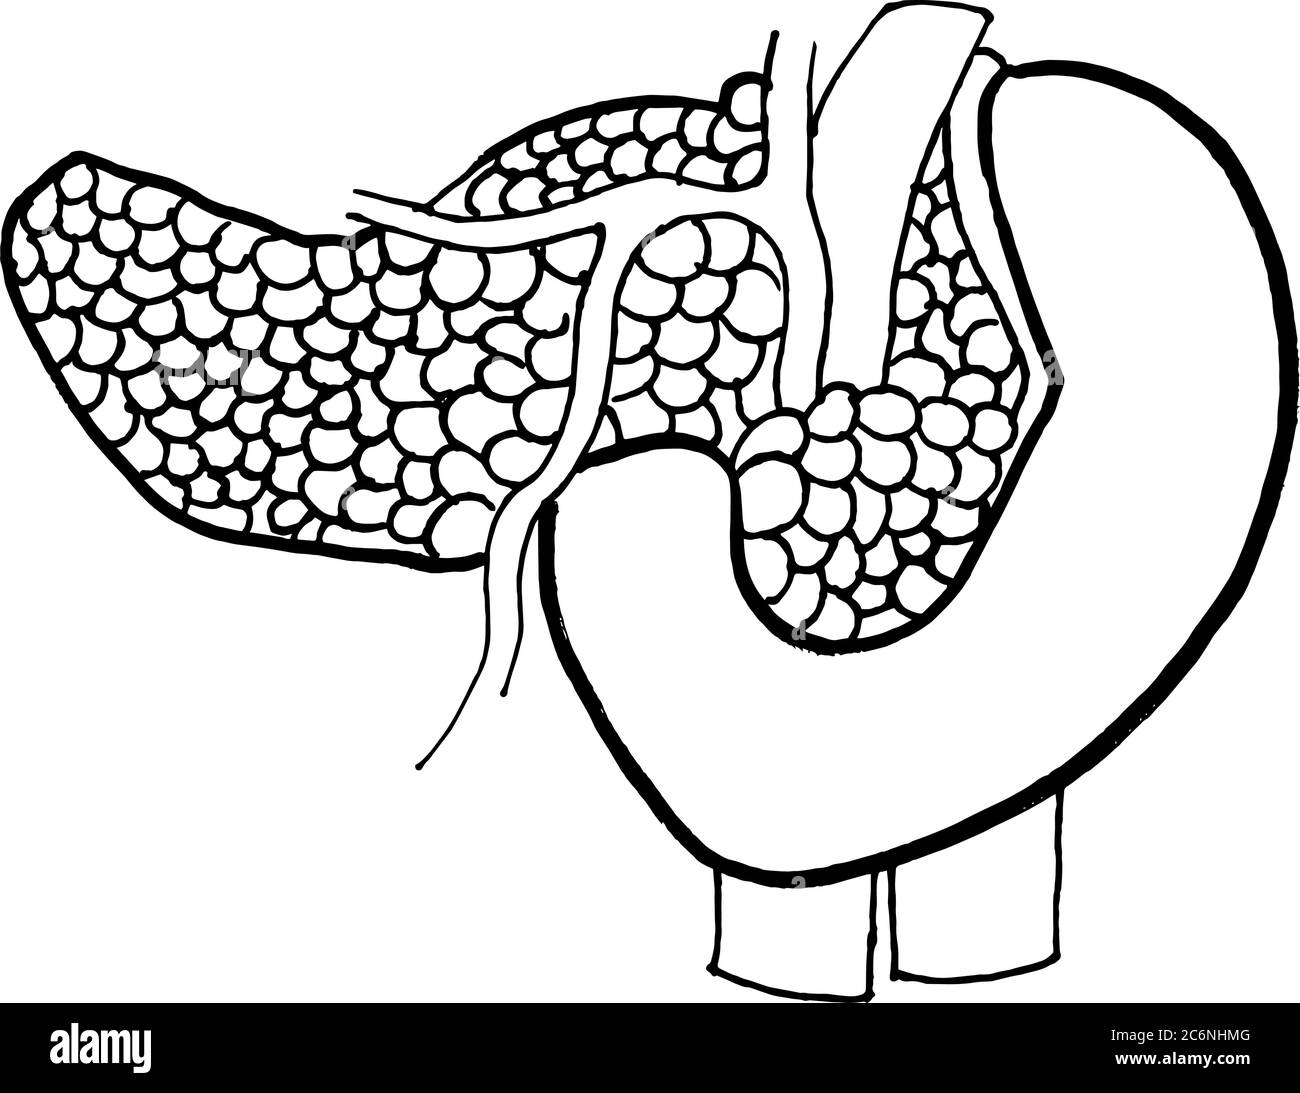 Konturvektor Umriss Zeichnung des menschlichen Pankreas-Organs. Medizinische Design editierbare Vorlage Stock Vektor